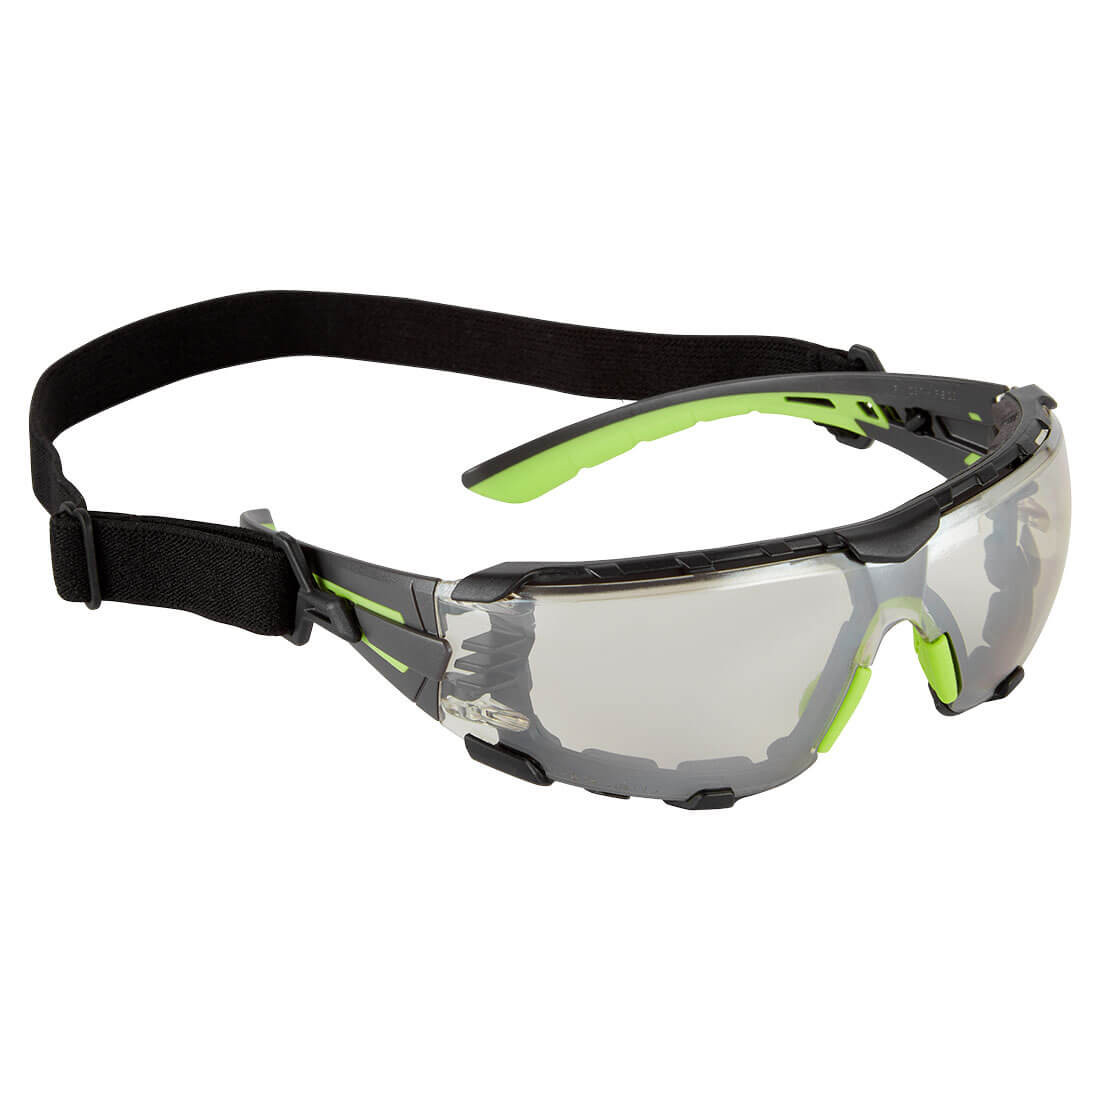 Gafas de seguridad Tech Look Pro KN - Equipamientos de protección personal